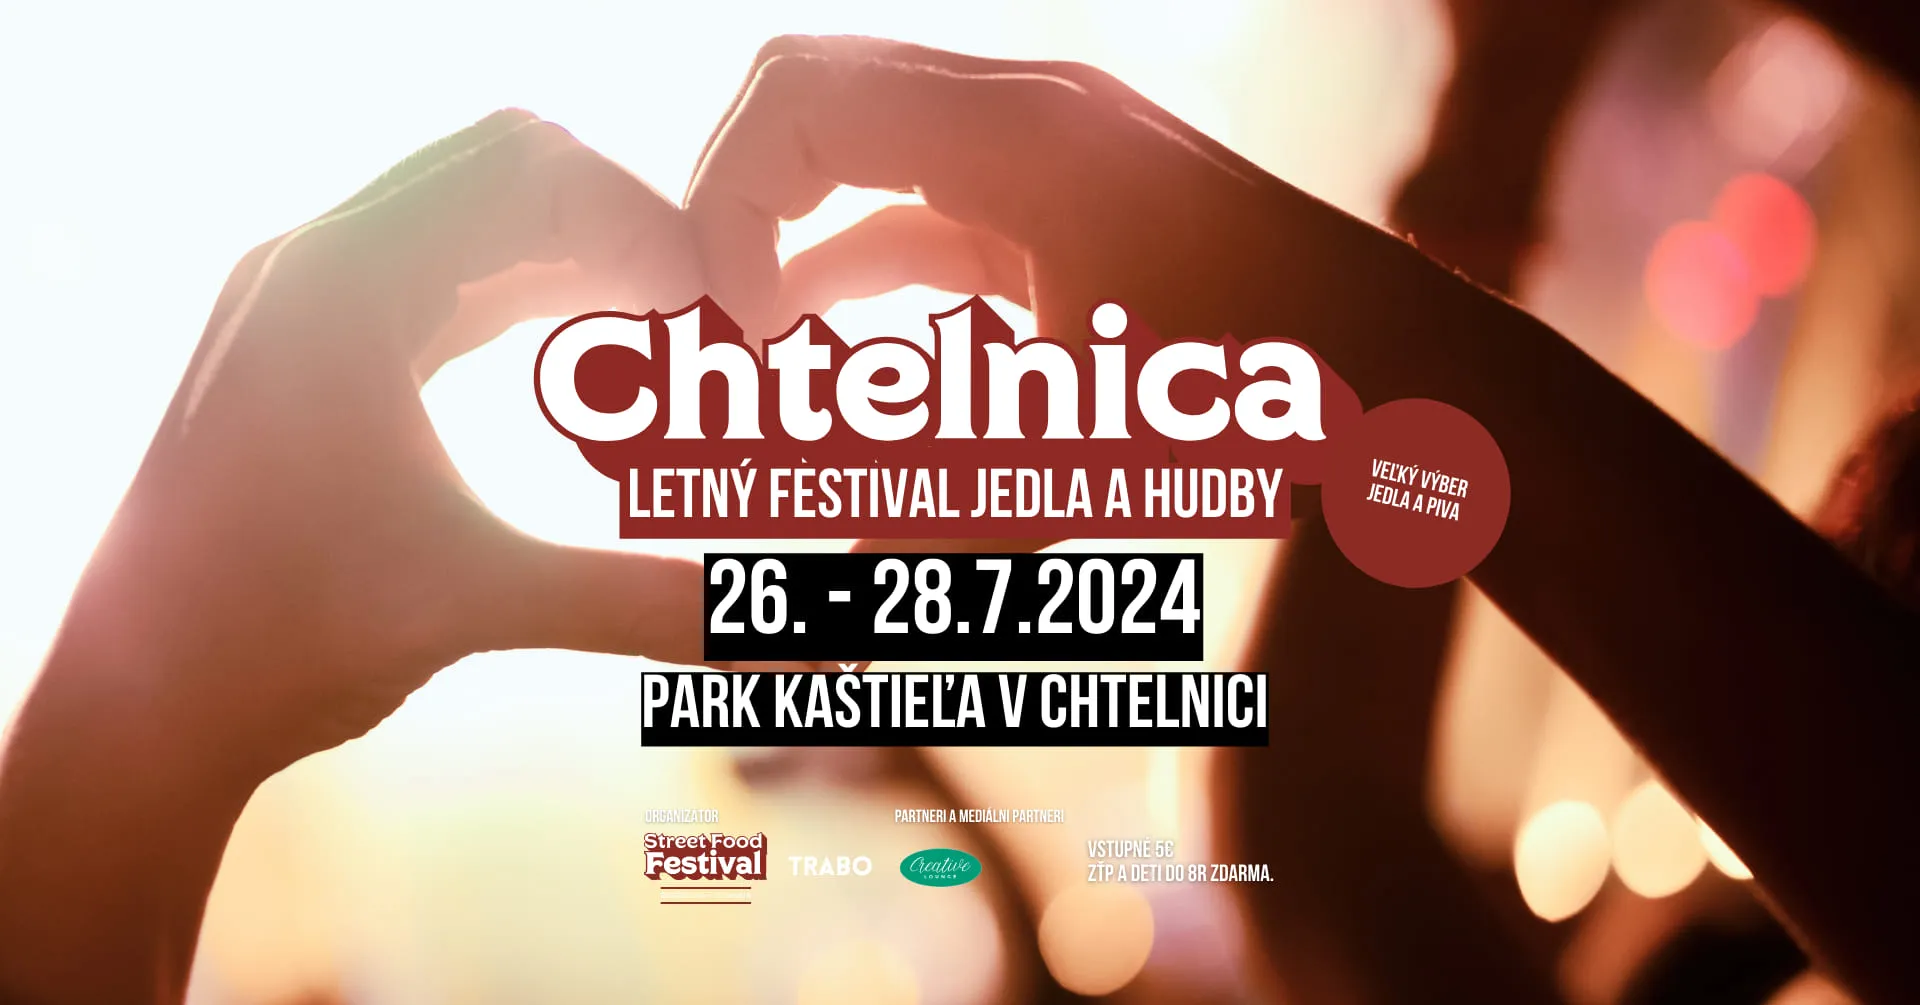 Letný festival jedla a hudby Chtelnica